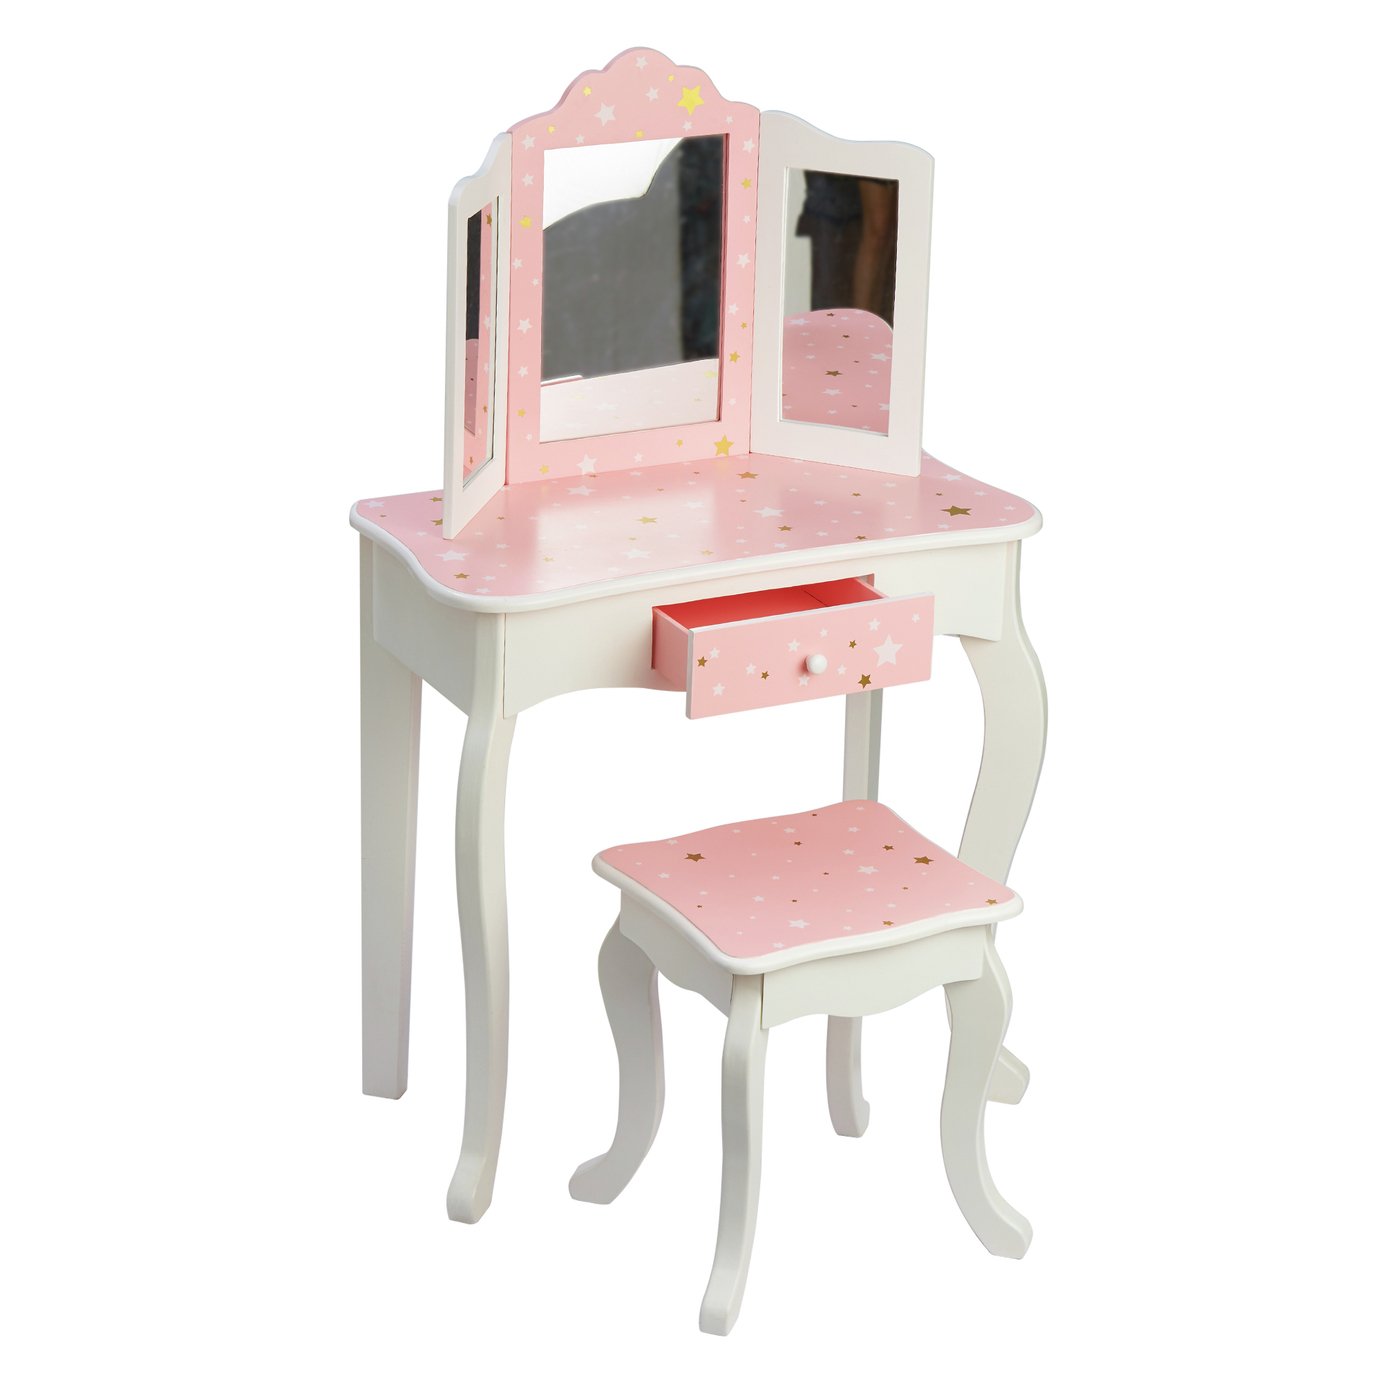 Fantasy Fields Star Prints Toy Vanity Set - Pink & White 